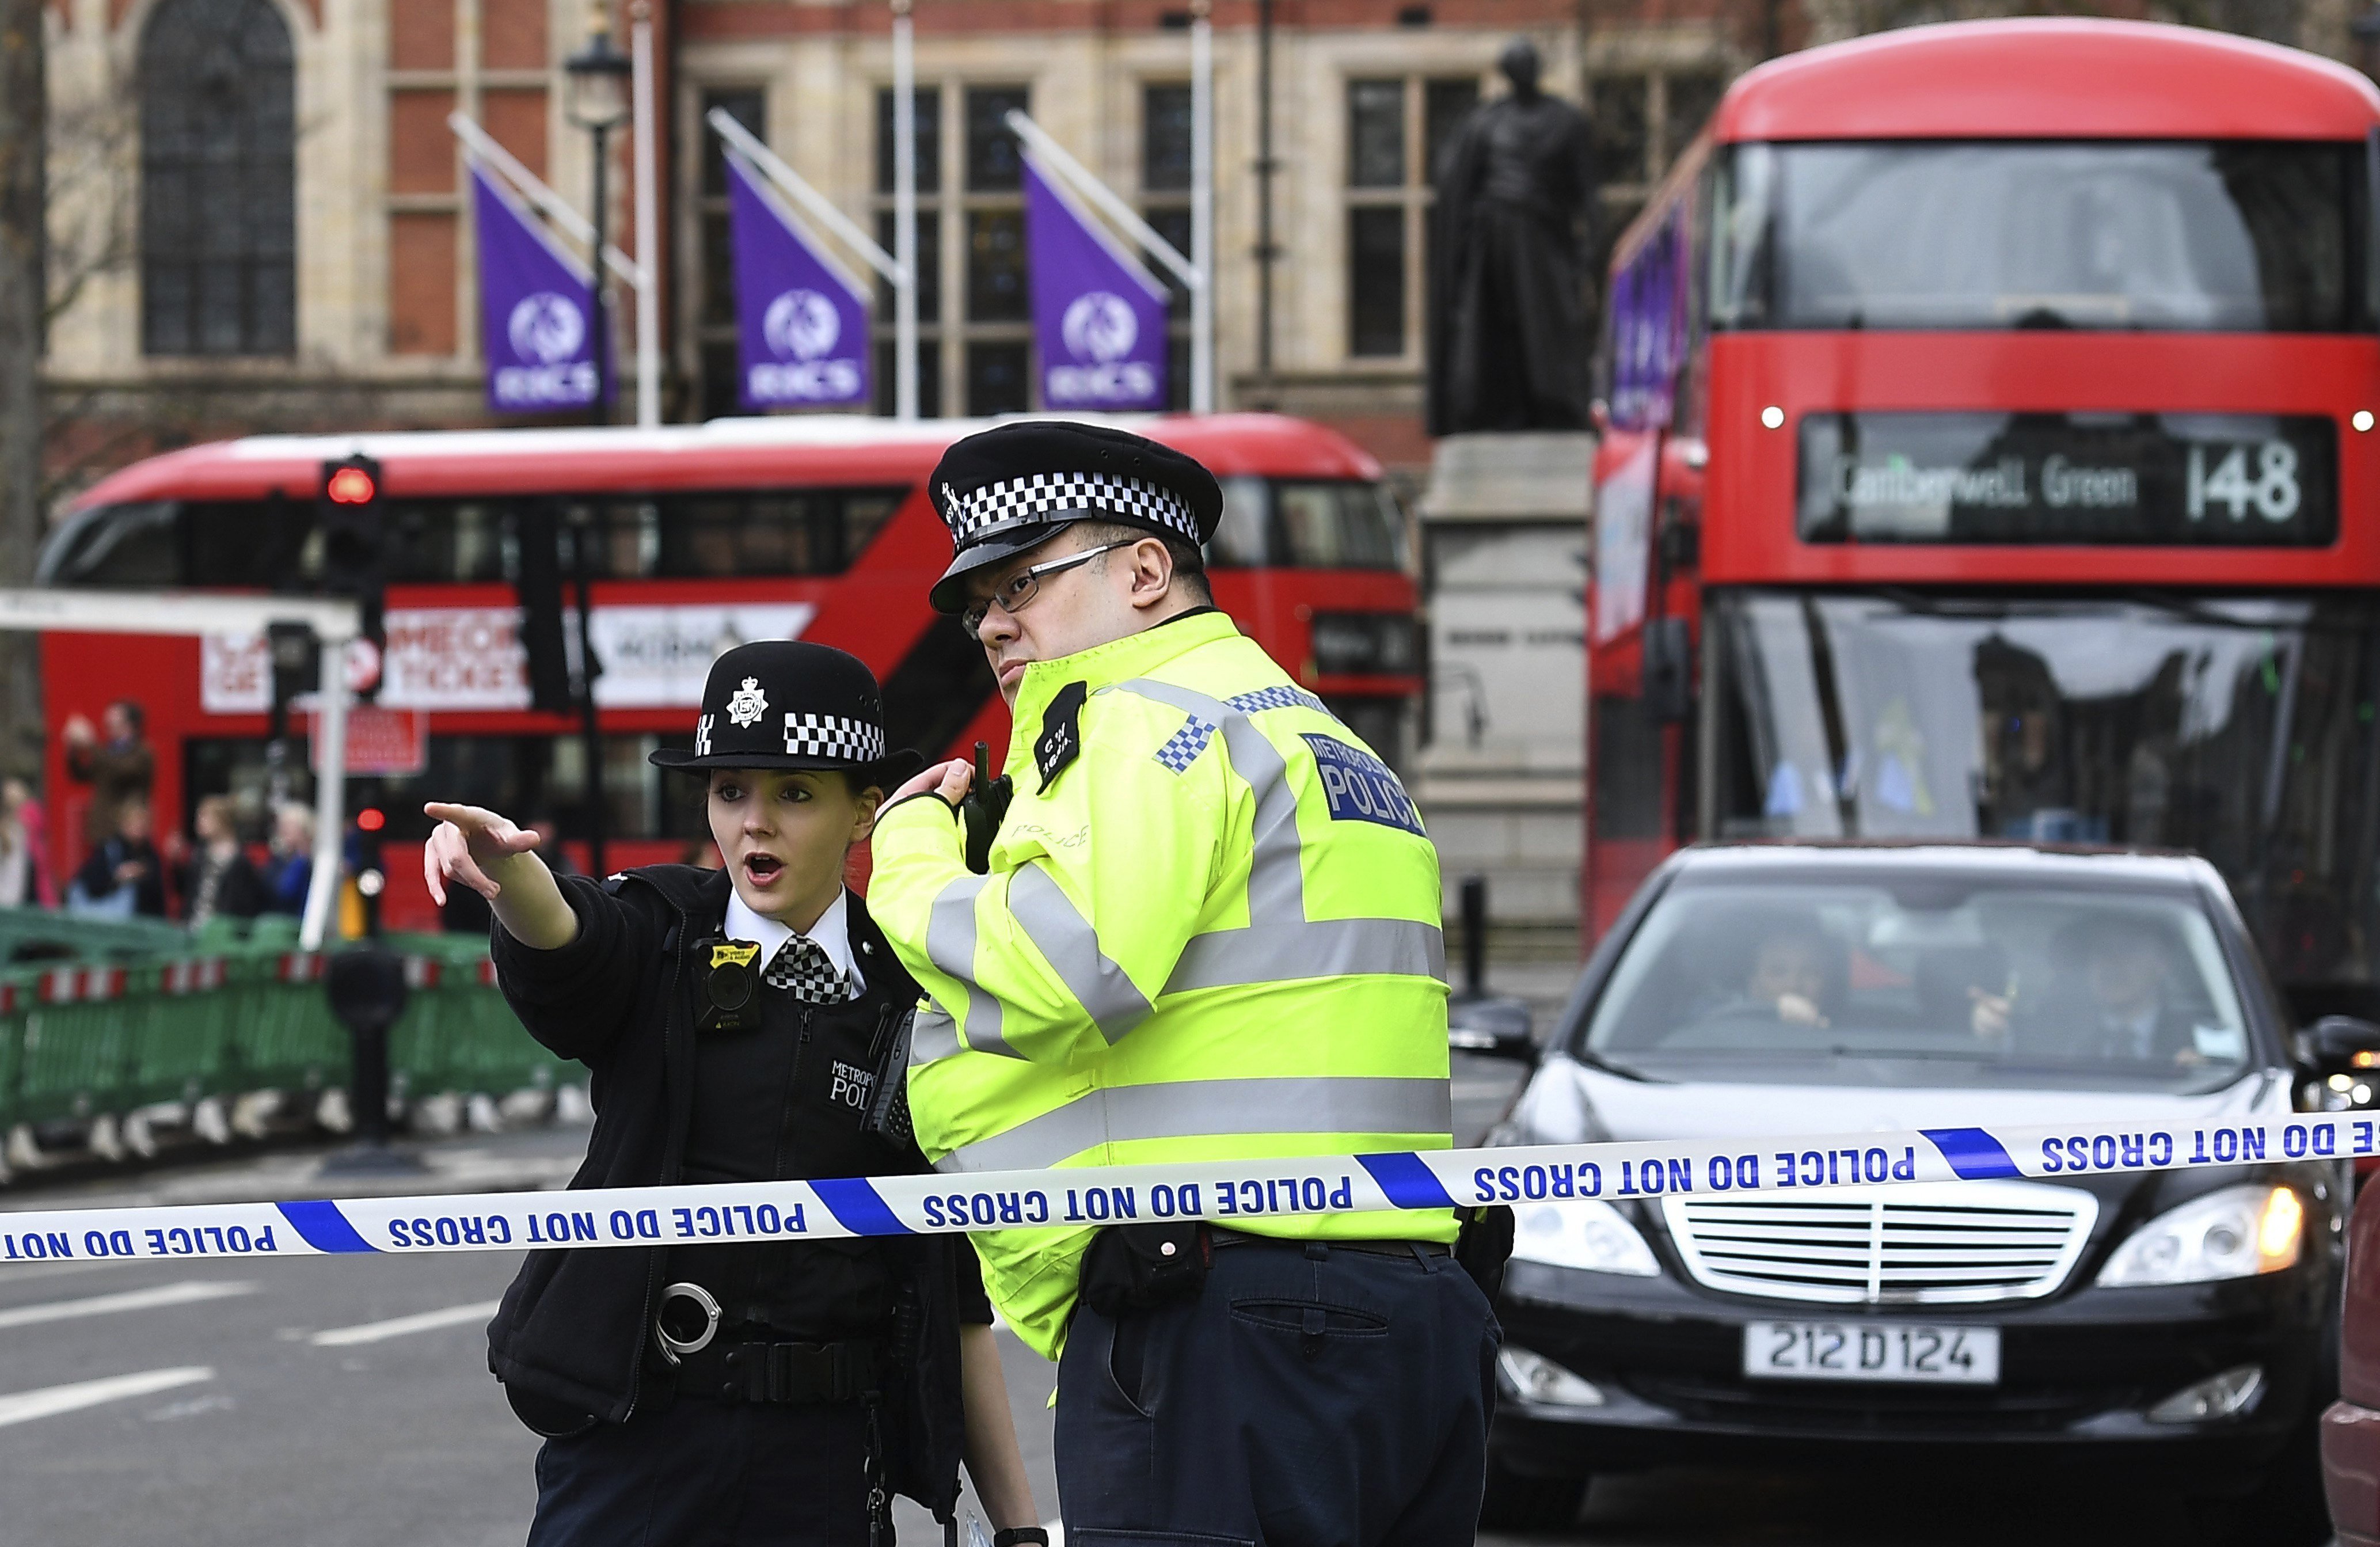 L'atacant de Londres era britànic però amb connexions amb la violència extrema